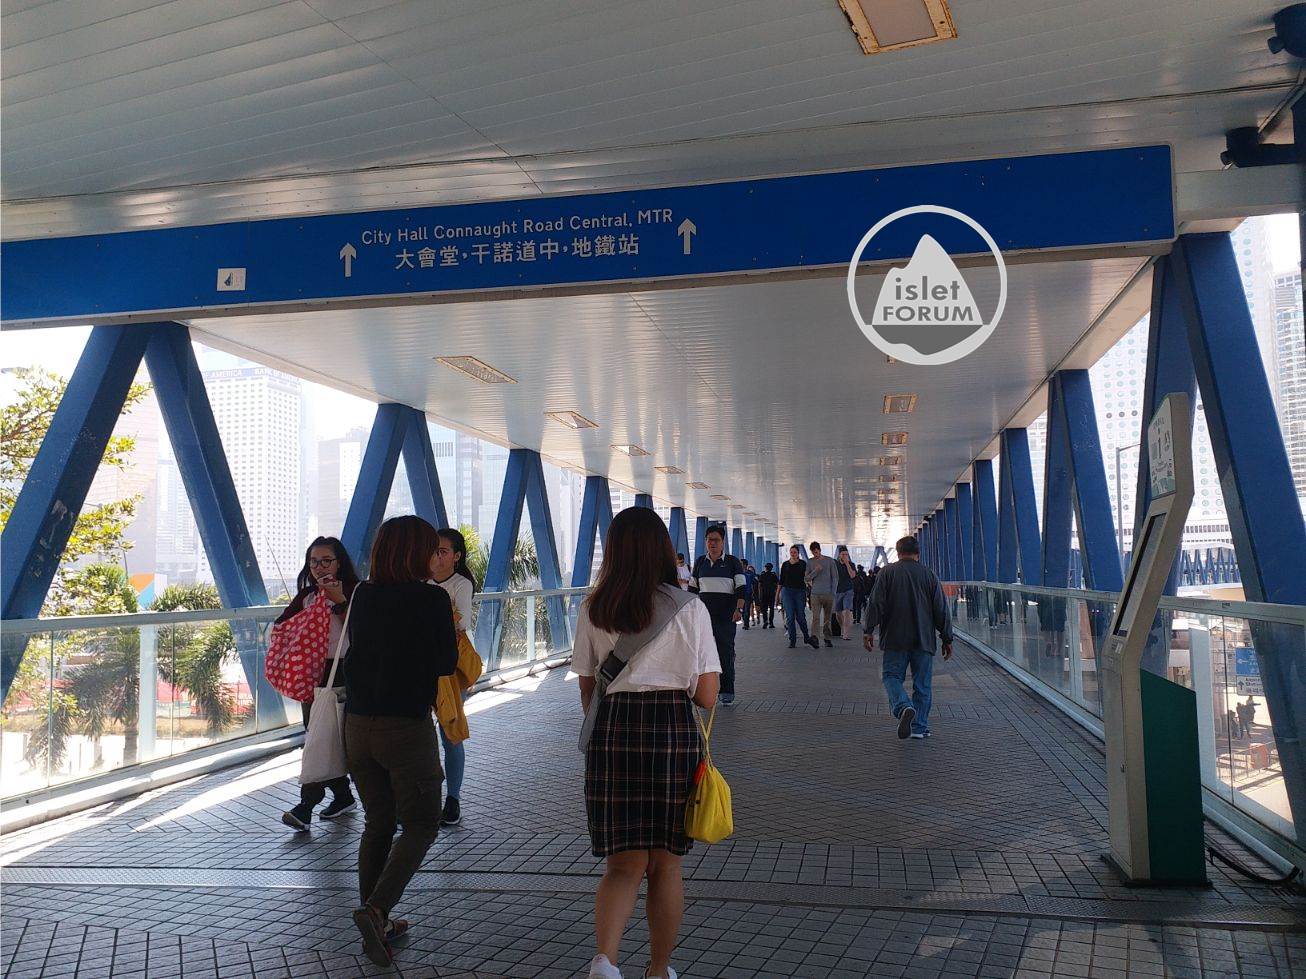 中區行人天橋系統 Central Elevated Walkway  (1).jpg